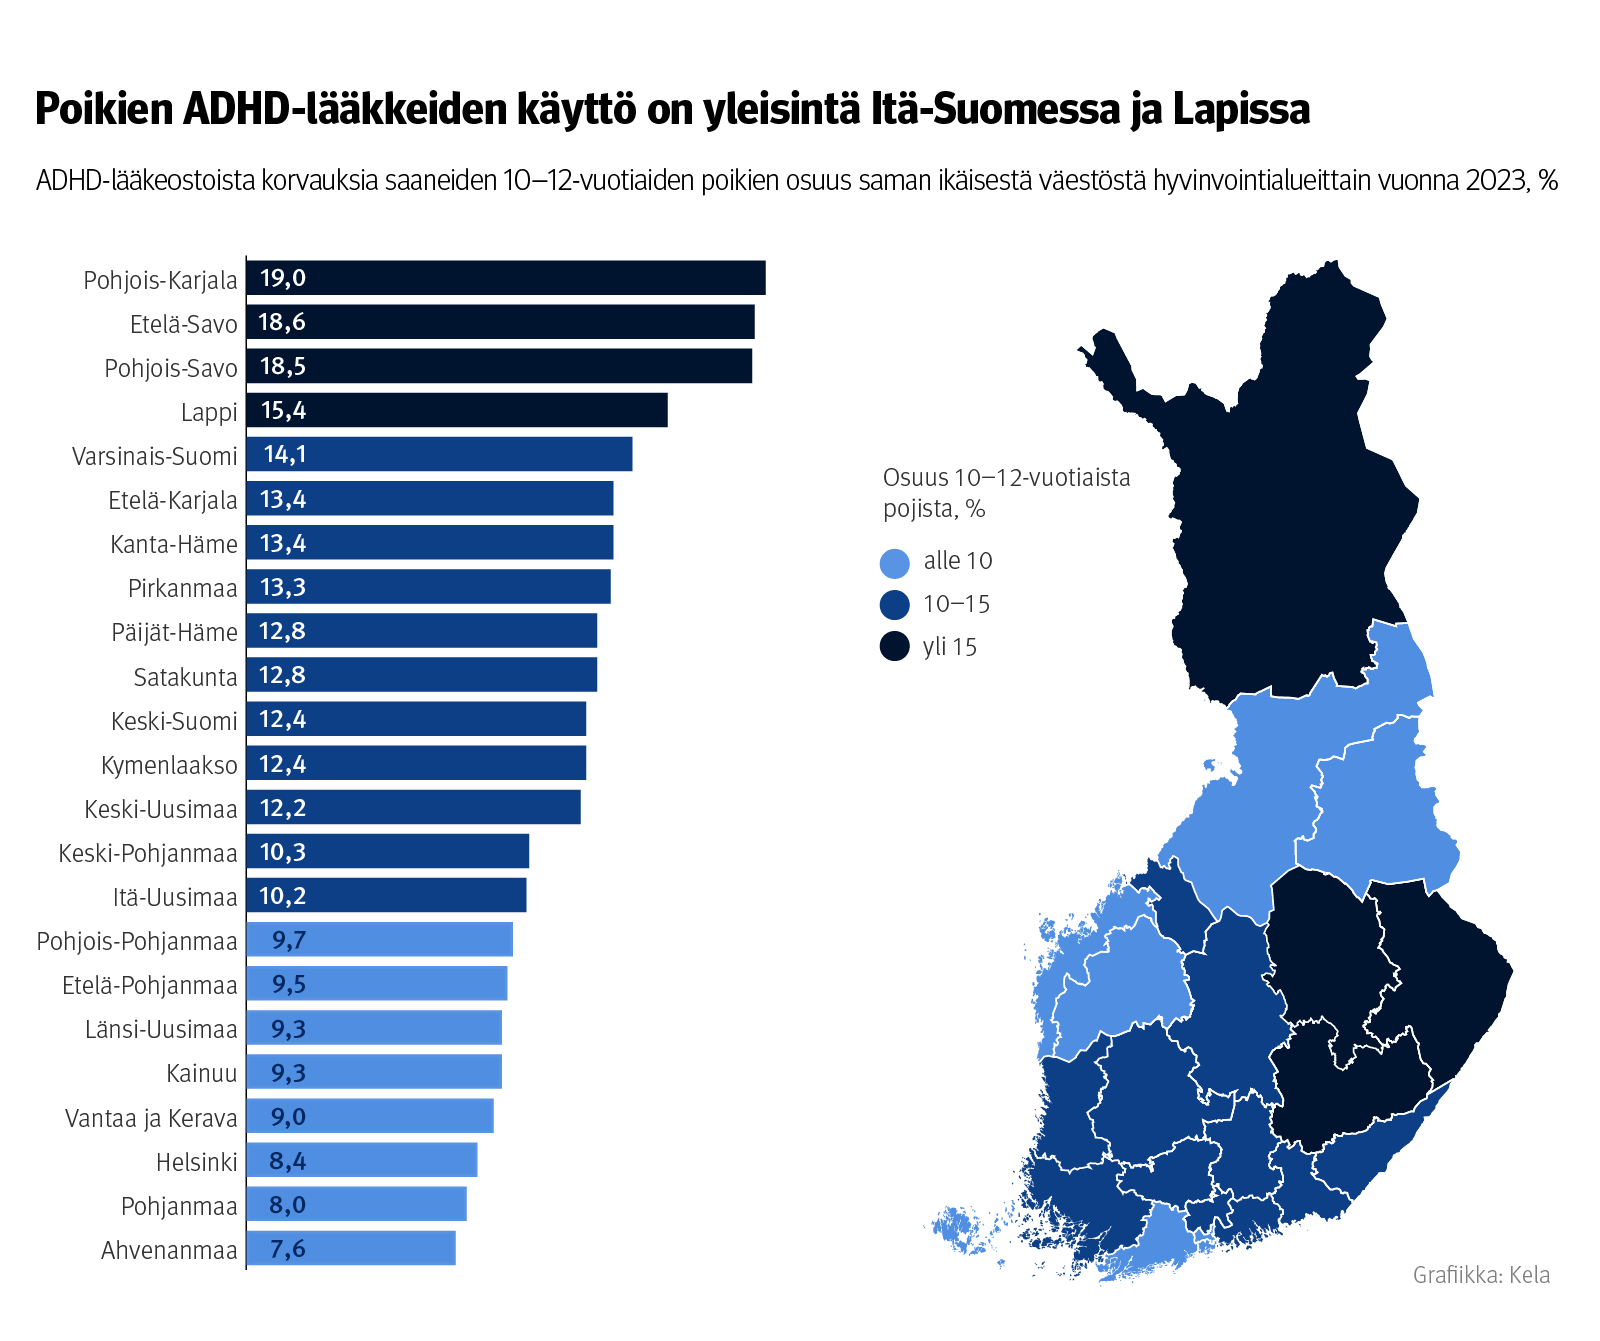 ADHD-lääkeostoista korvauksia saaneiden 10–12-vuotiaiden poikien osuus saman ikäisestä väestöstä hyvinvointialueittain vuonna 2023. Kuvasta näkee, että poikien ADHD-lääkkeiden käyttö on yleisintä Itä-Suomessa ja Lapissa. Itä-Suomessa yleisyys lähestyy jo kahtakymmentä prosenttia. Suurimmalla osalla hyvinvointialueista osuus on yli 10 prosenttia.